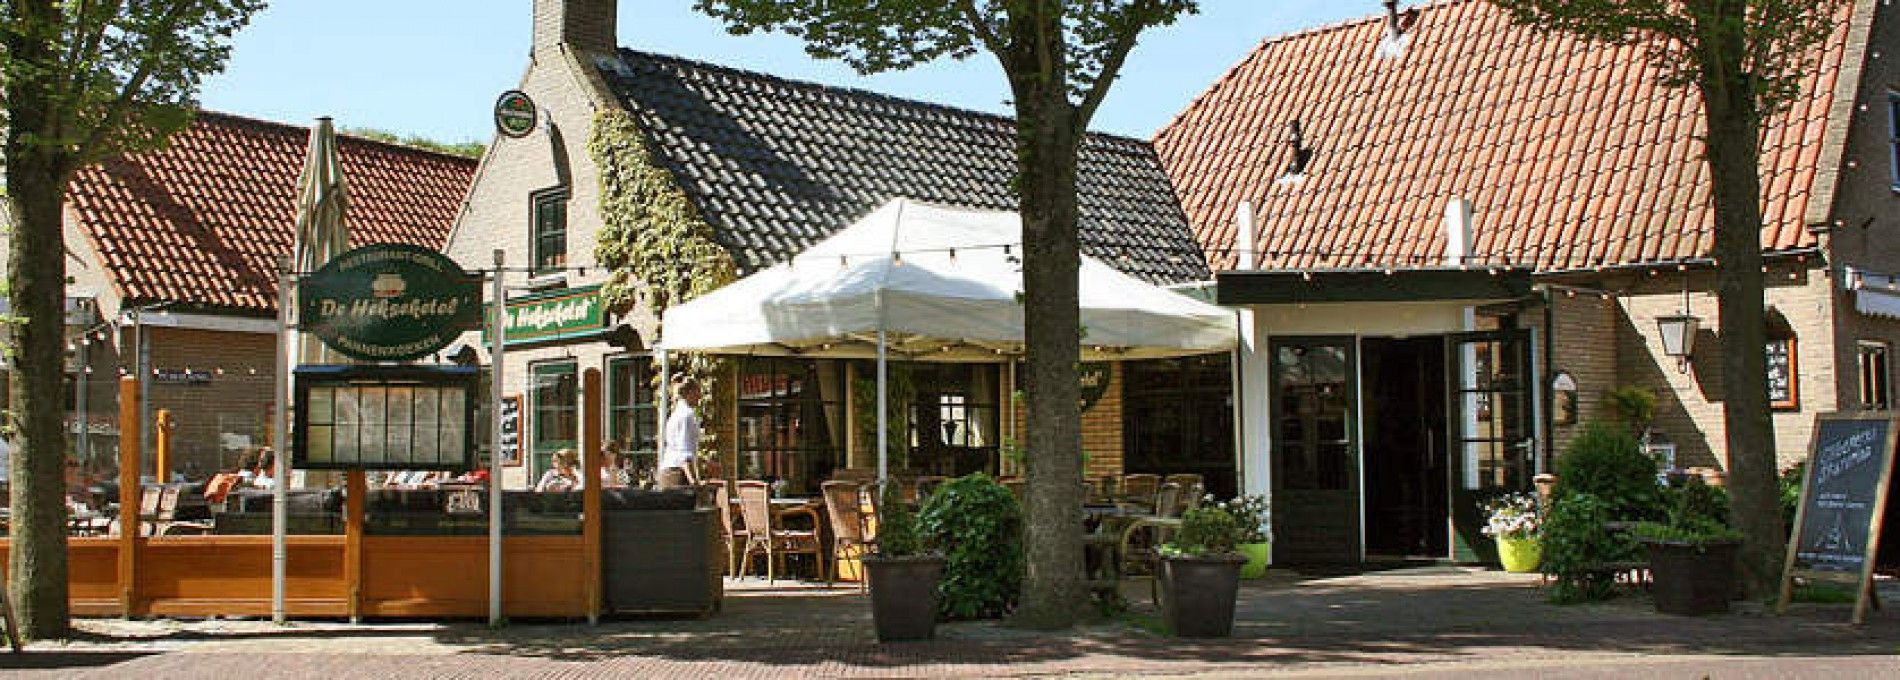 Restaurant De Hekseketel - VVV Ameland